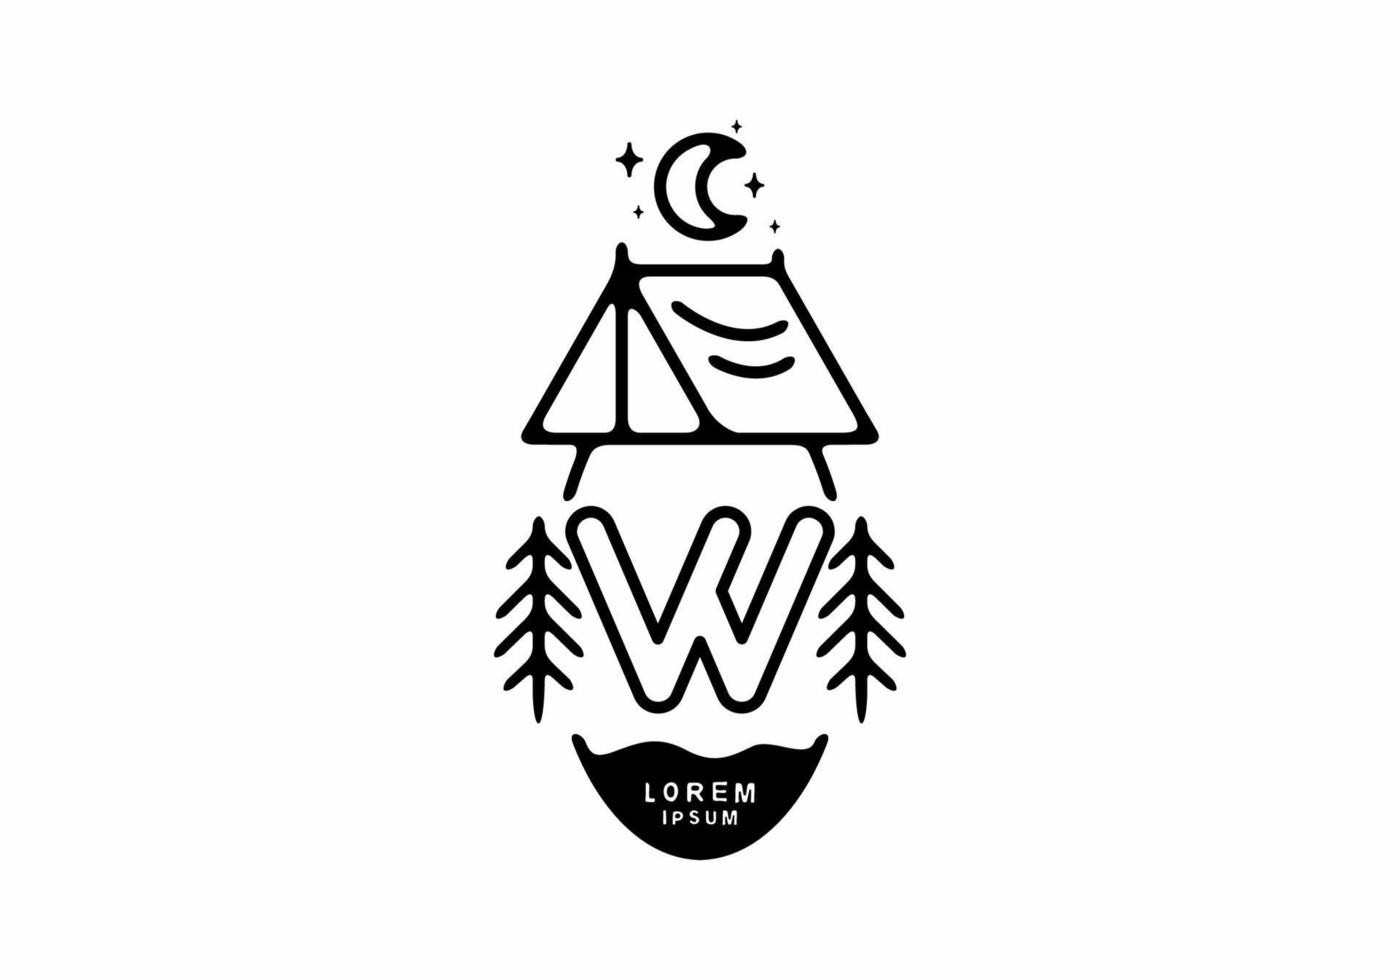 zwarte lijn kunst illustratie van camping tent badge met w letter vector